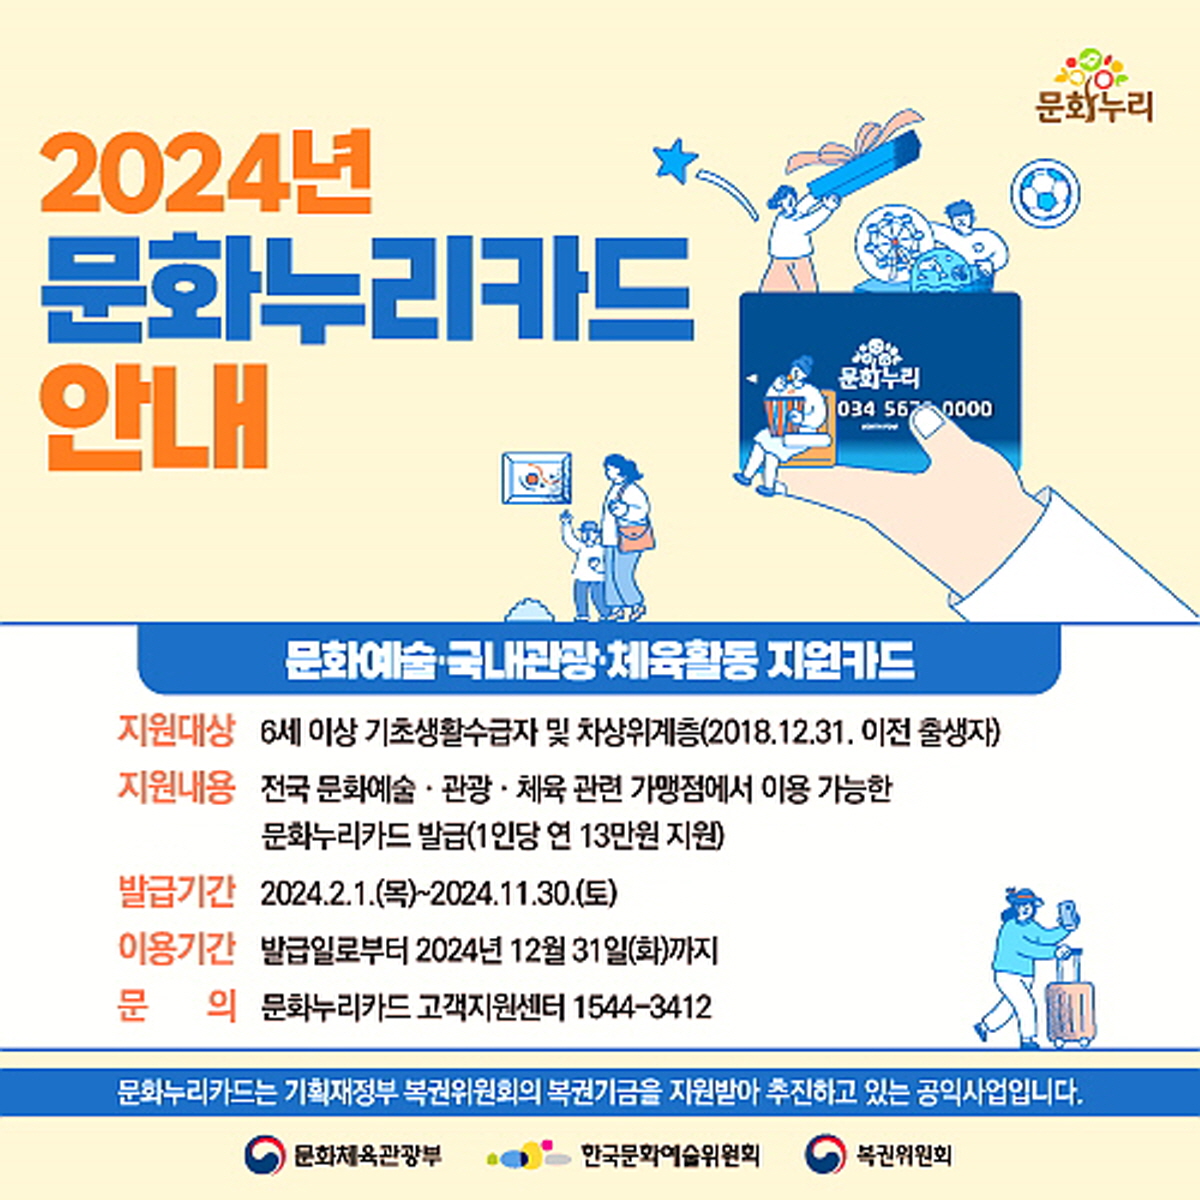 경북도, 2024년 문화누리카드 발급 및 사용 개시 ! 1인당 13만원 지원